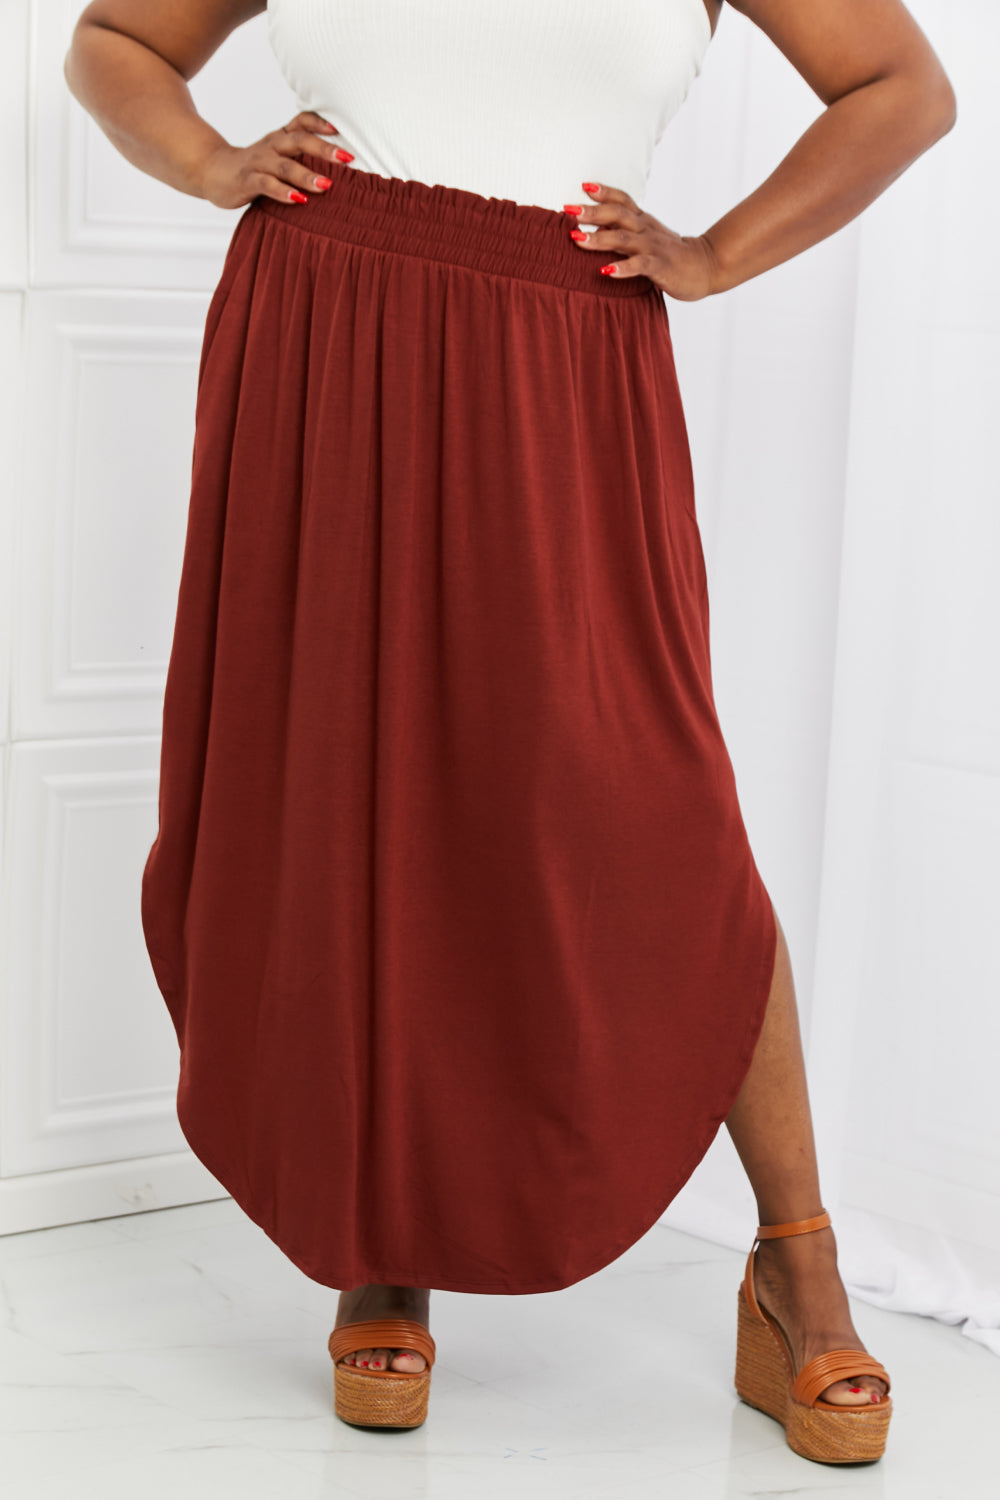 Scrunch Skirt in Dark Rust - AnnRose Boutique